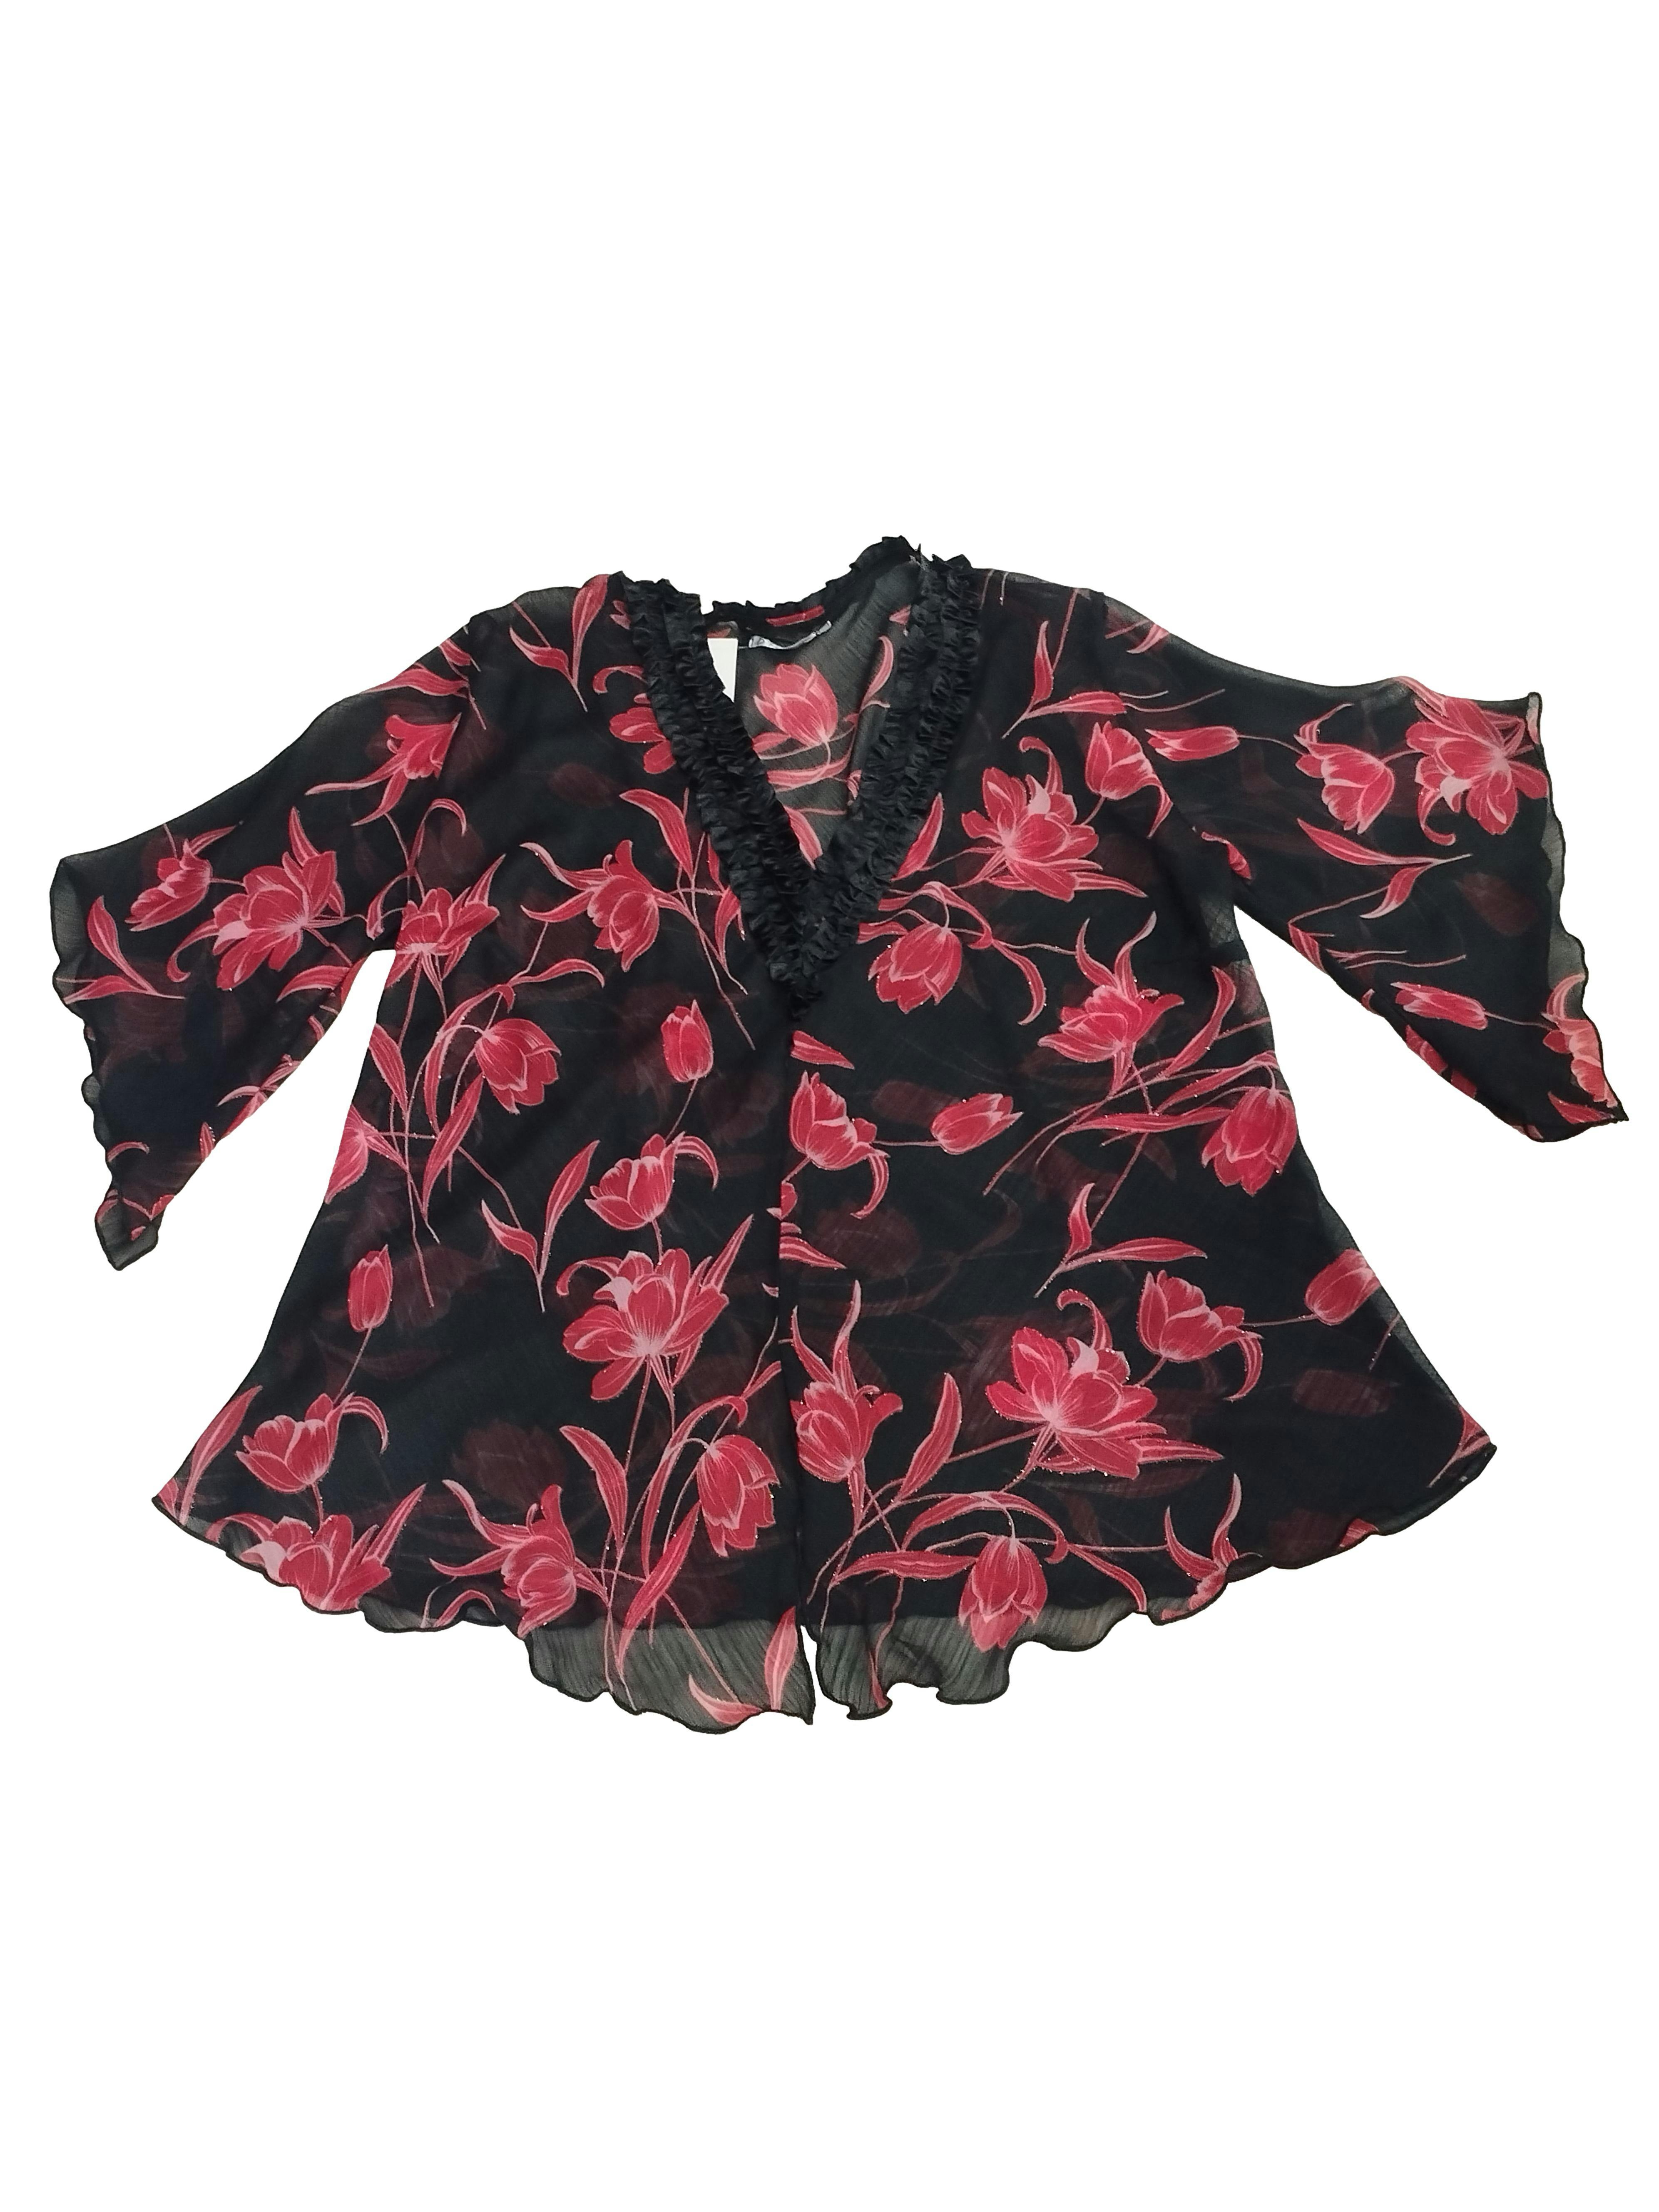 Blusa D'Marinas de gasa negra con flores en rojo, abertura pequeña en la basta, cuello en V y corrugado en el contorno. Busto: 128 cm, Largo: 82 cm